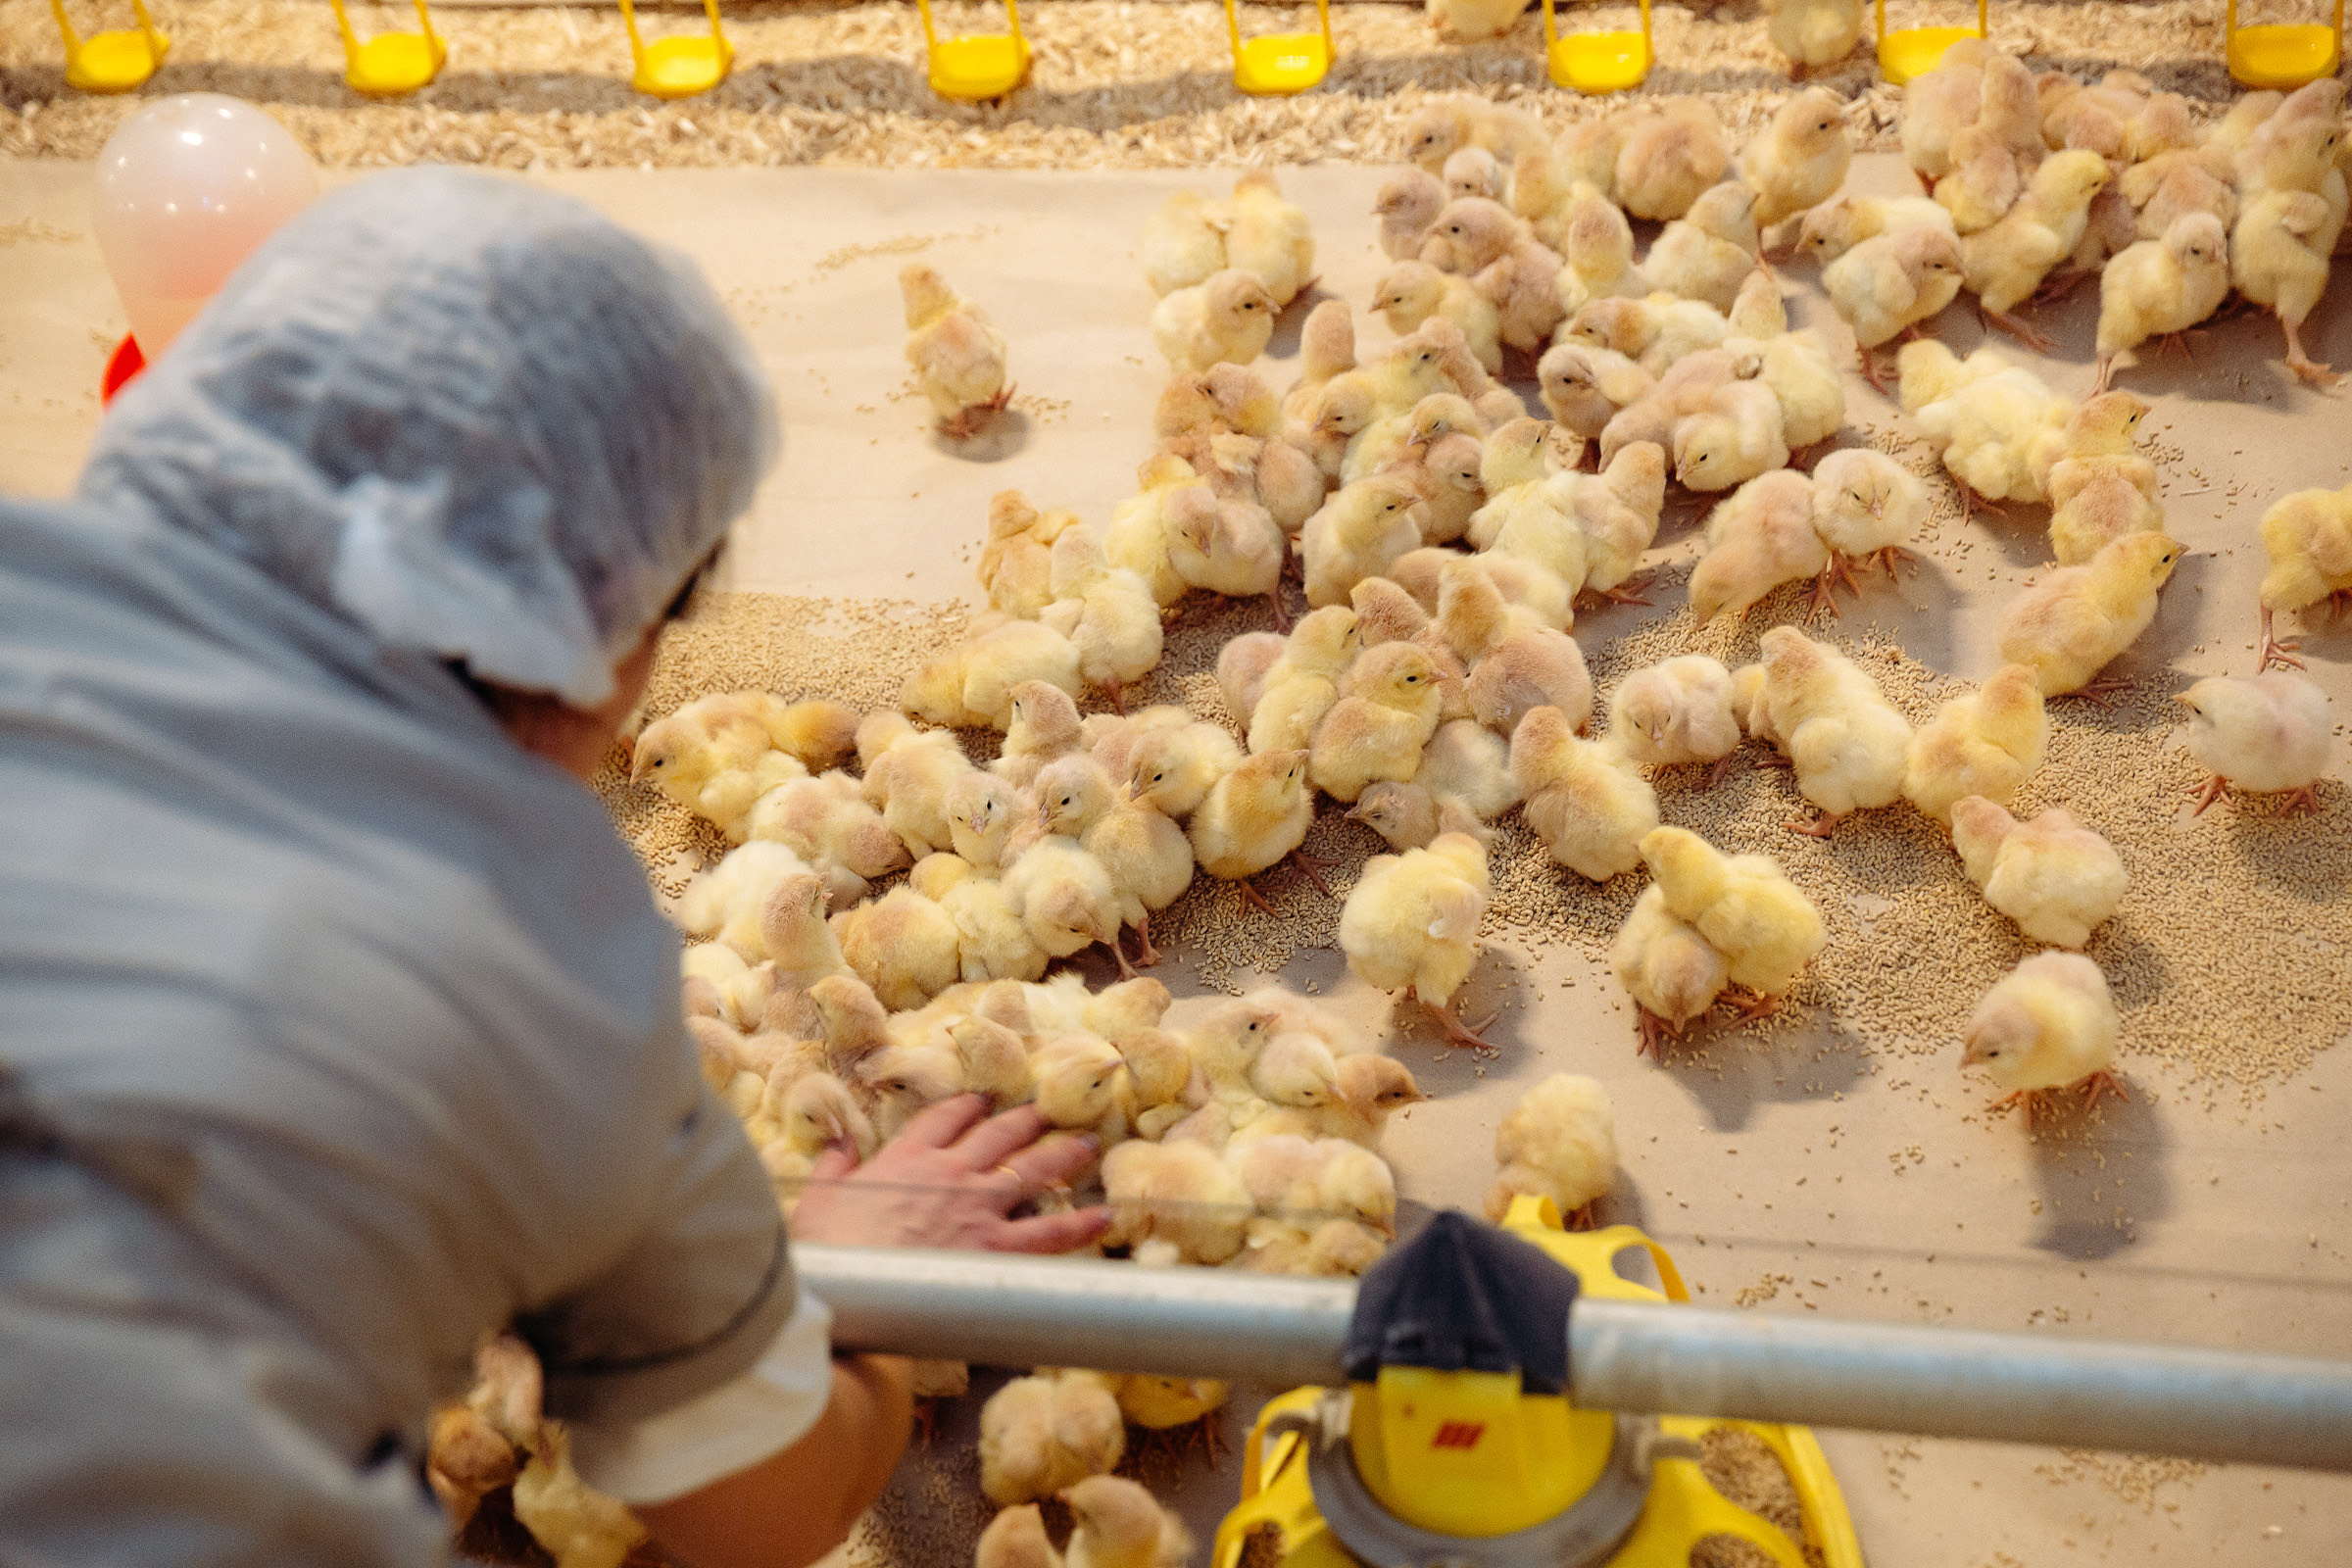 30 тысяч цыплят завезли на птицефабрику Мелекесского района Ульяновской  области – Министерство агропромышленного комплекса и развития сельских  территорий Ульяновской области